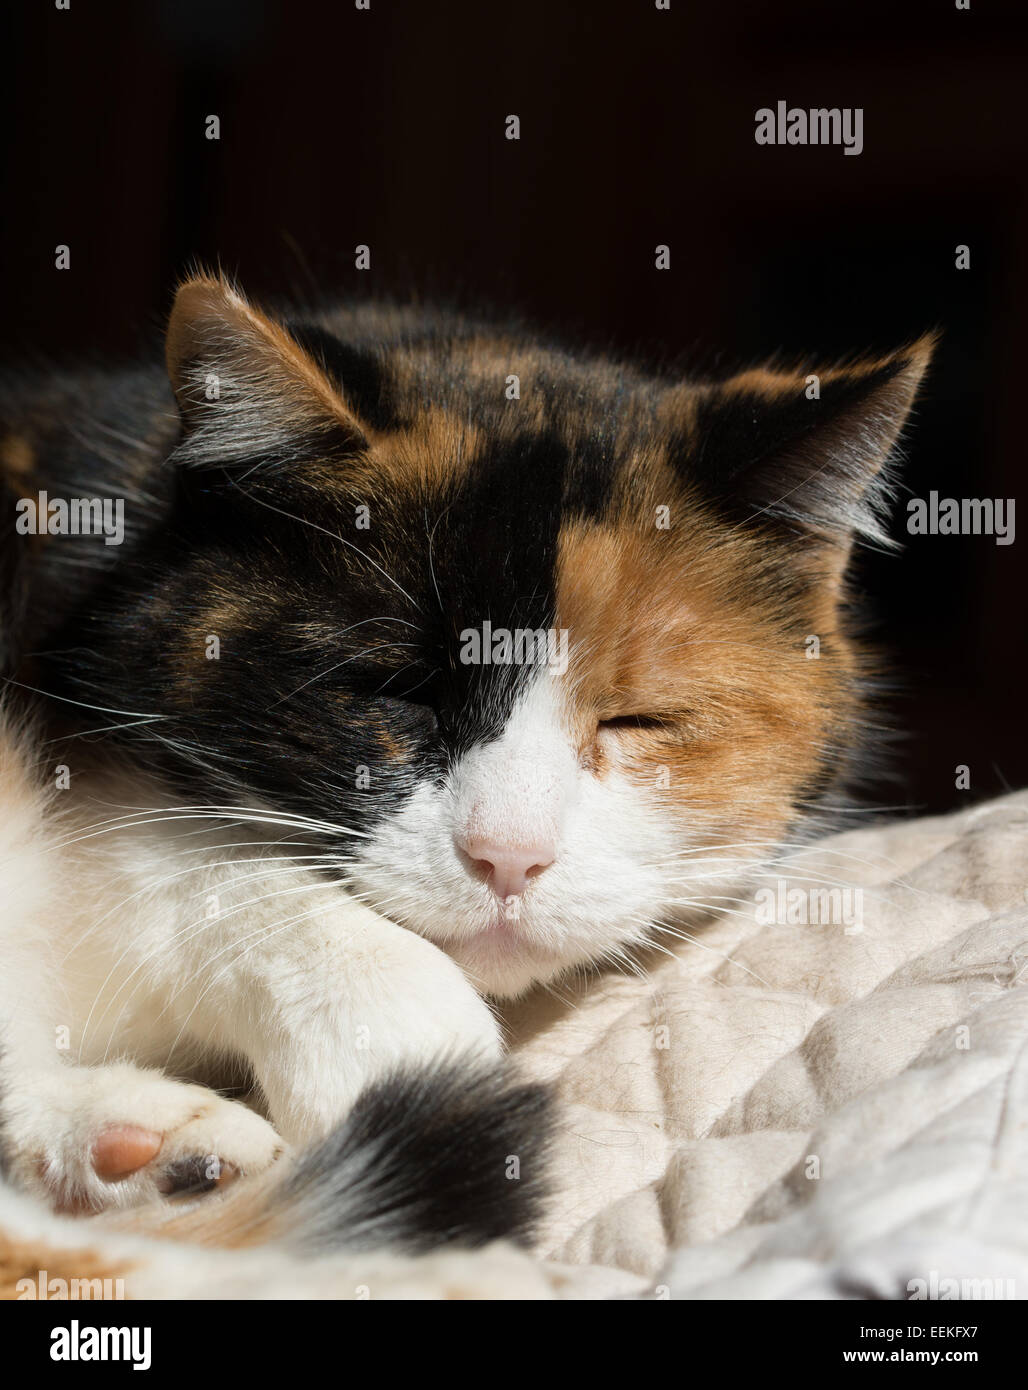 Beau chat calico dormir dans un endroit ensoleillé Banque D'Images